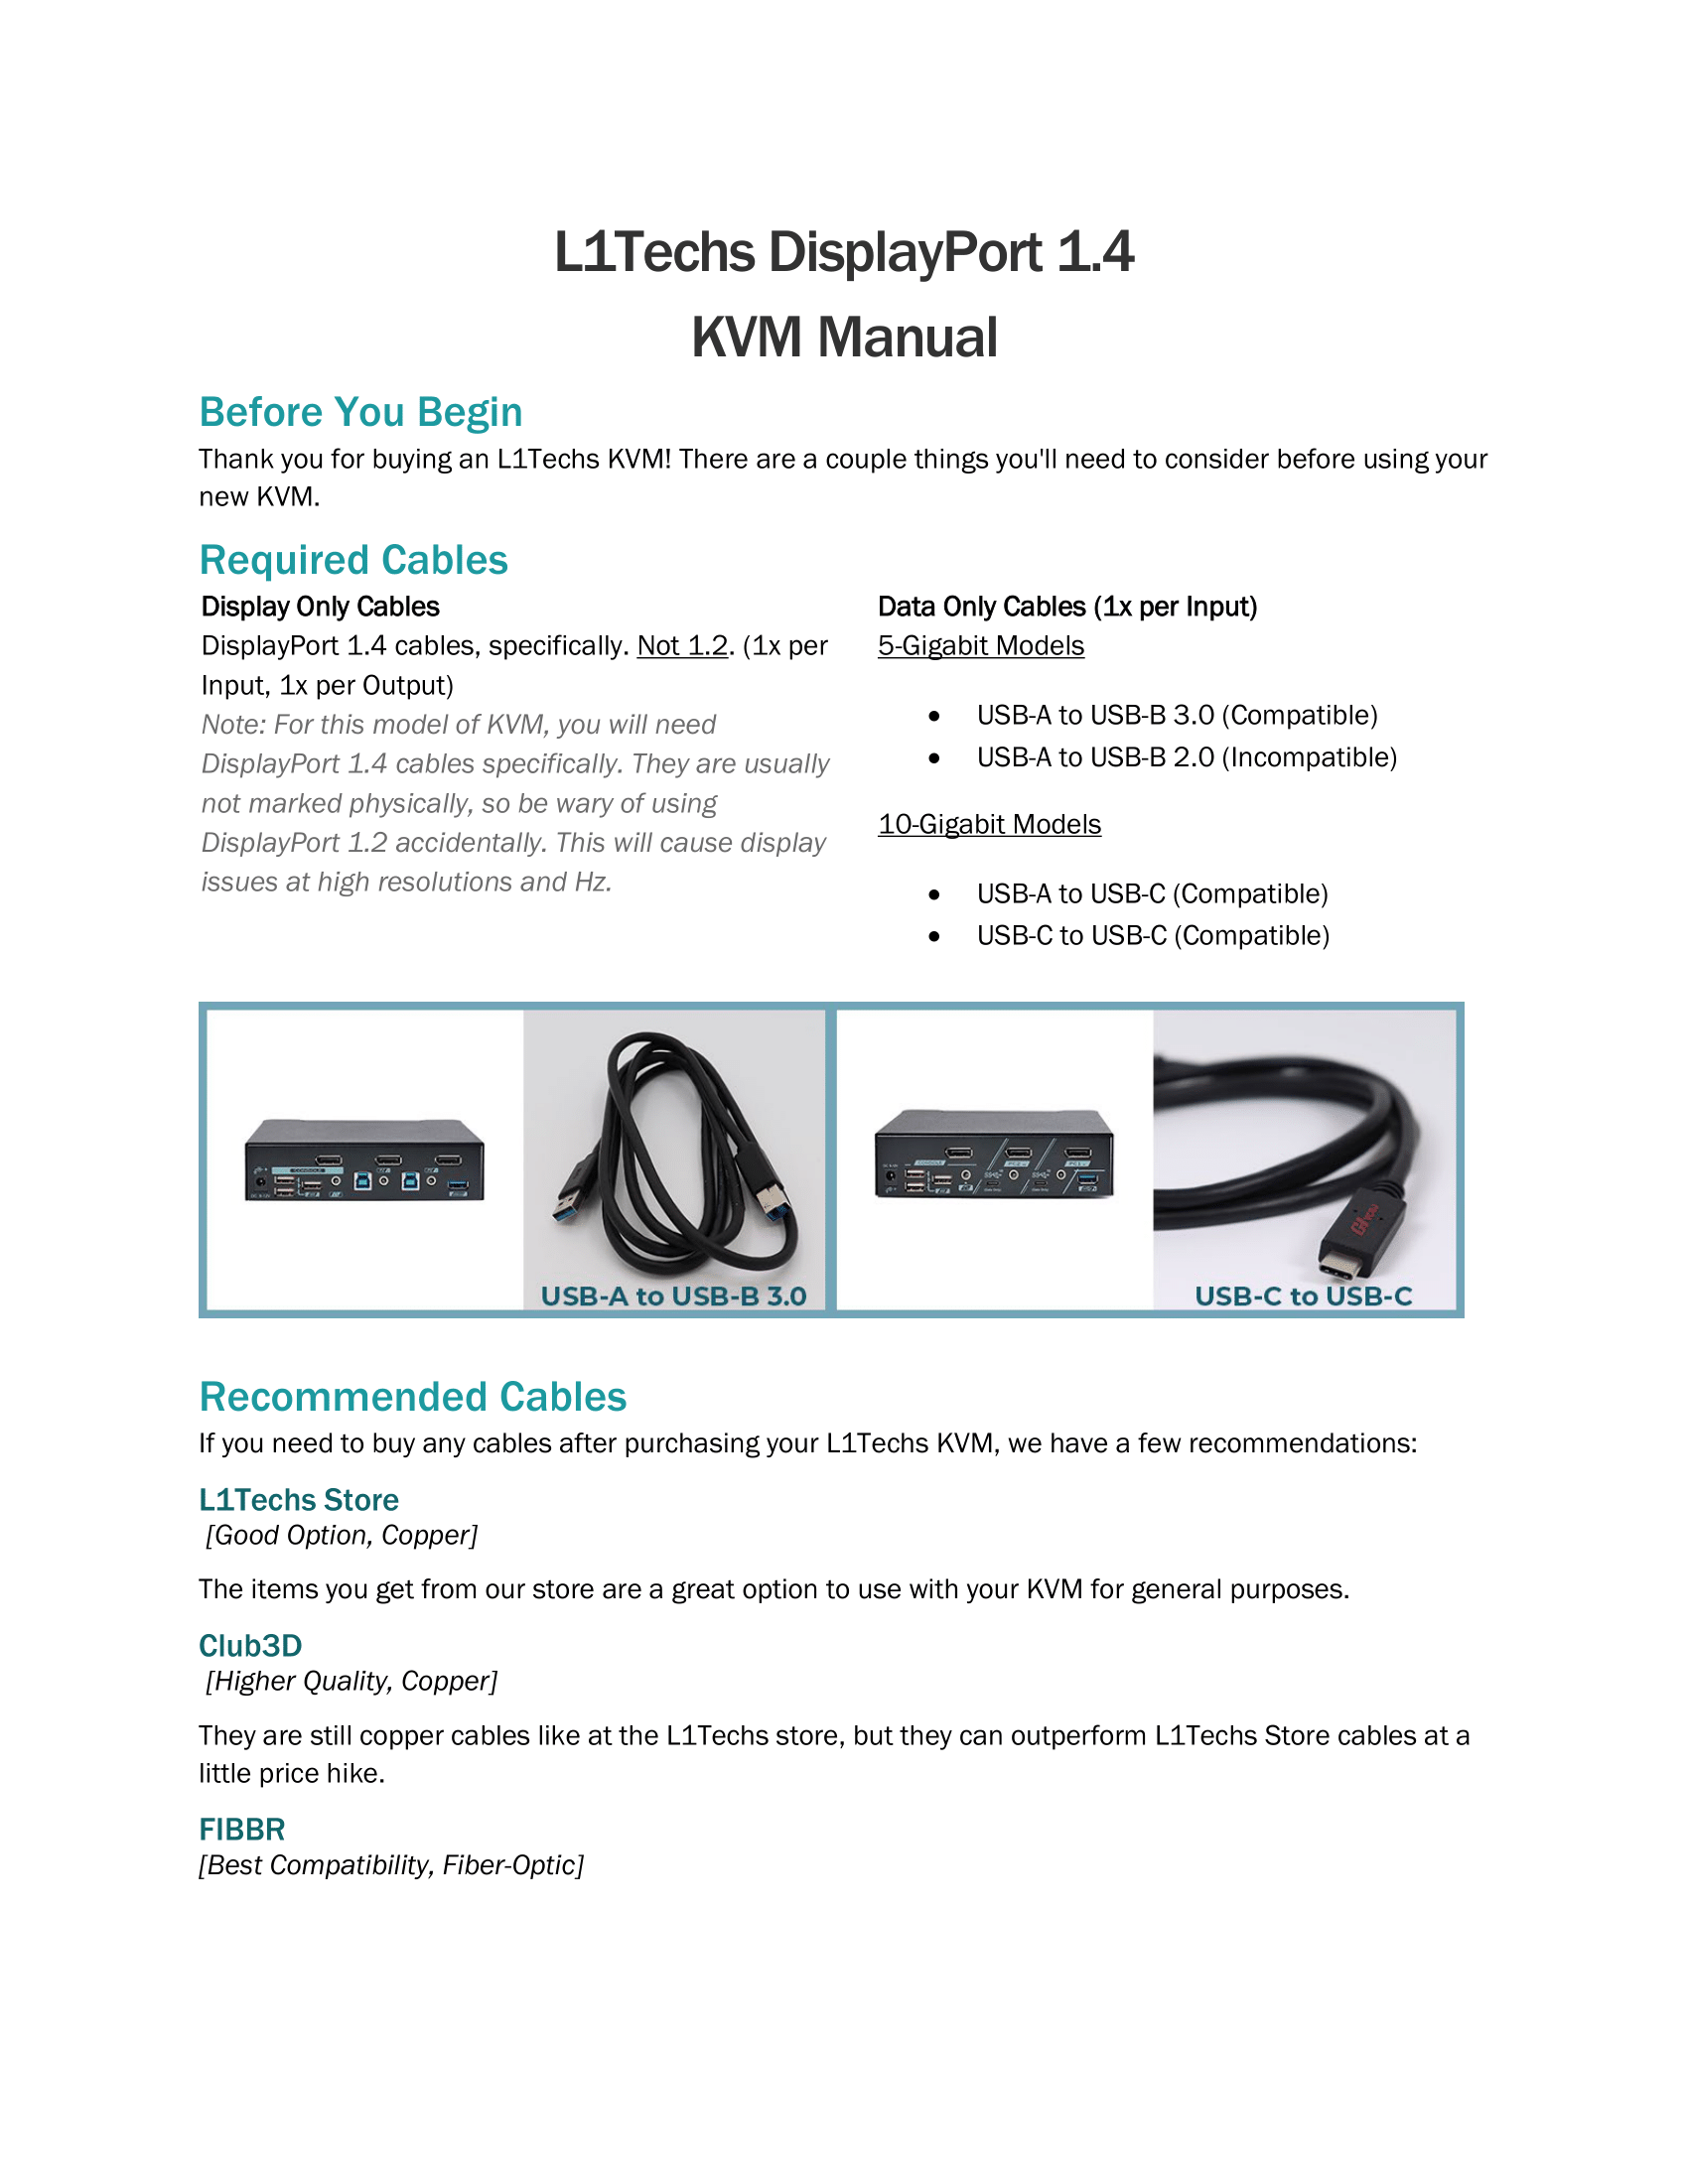 L1Techs DisplayPort 1.4 KVM Manual  FULL-1